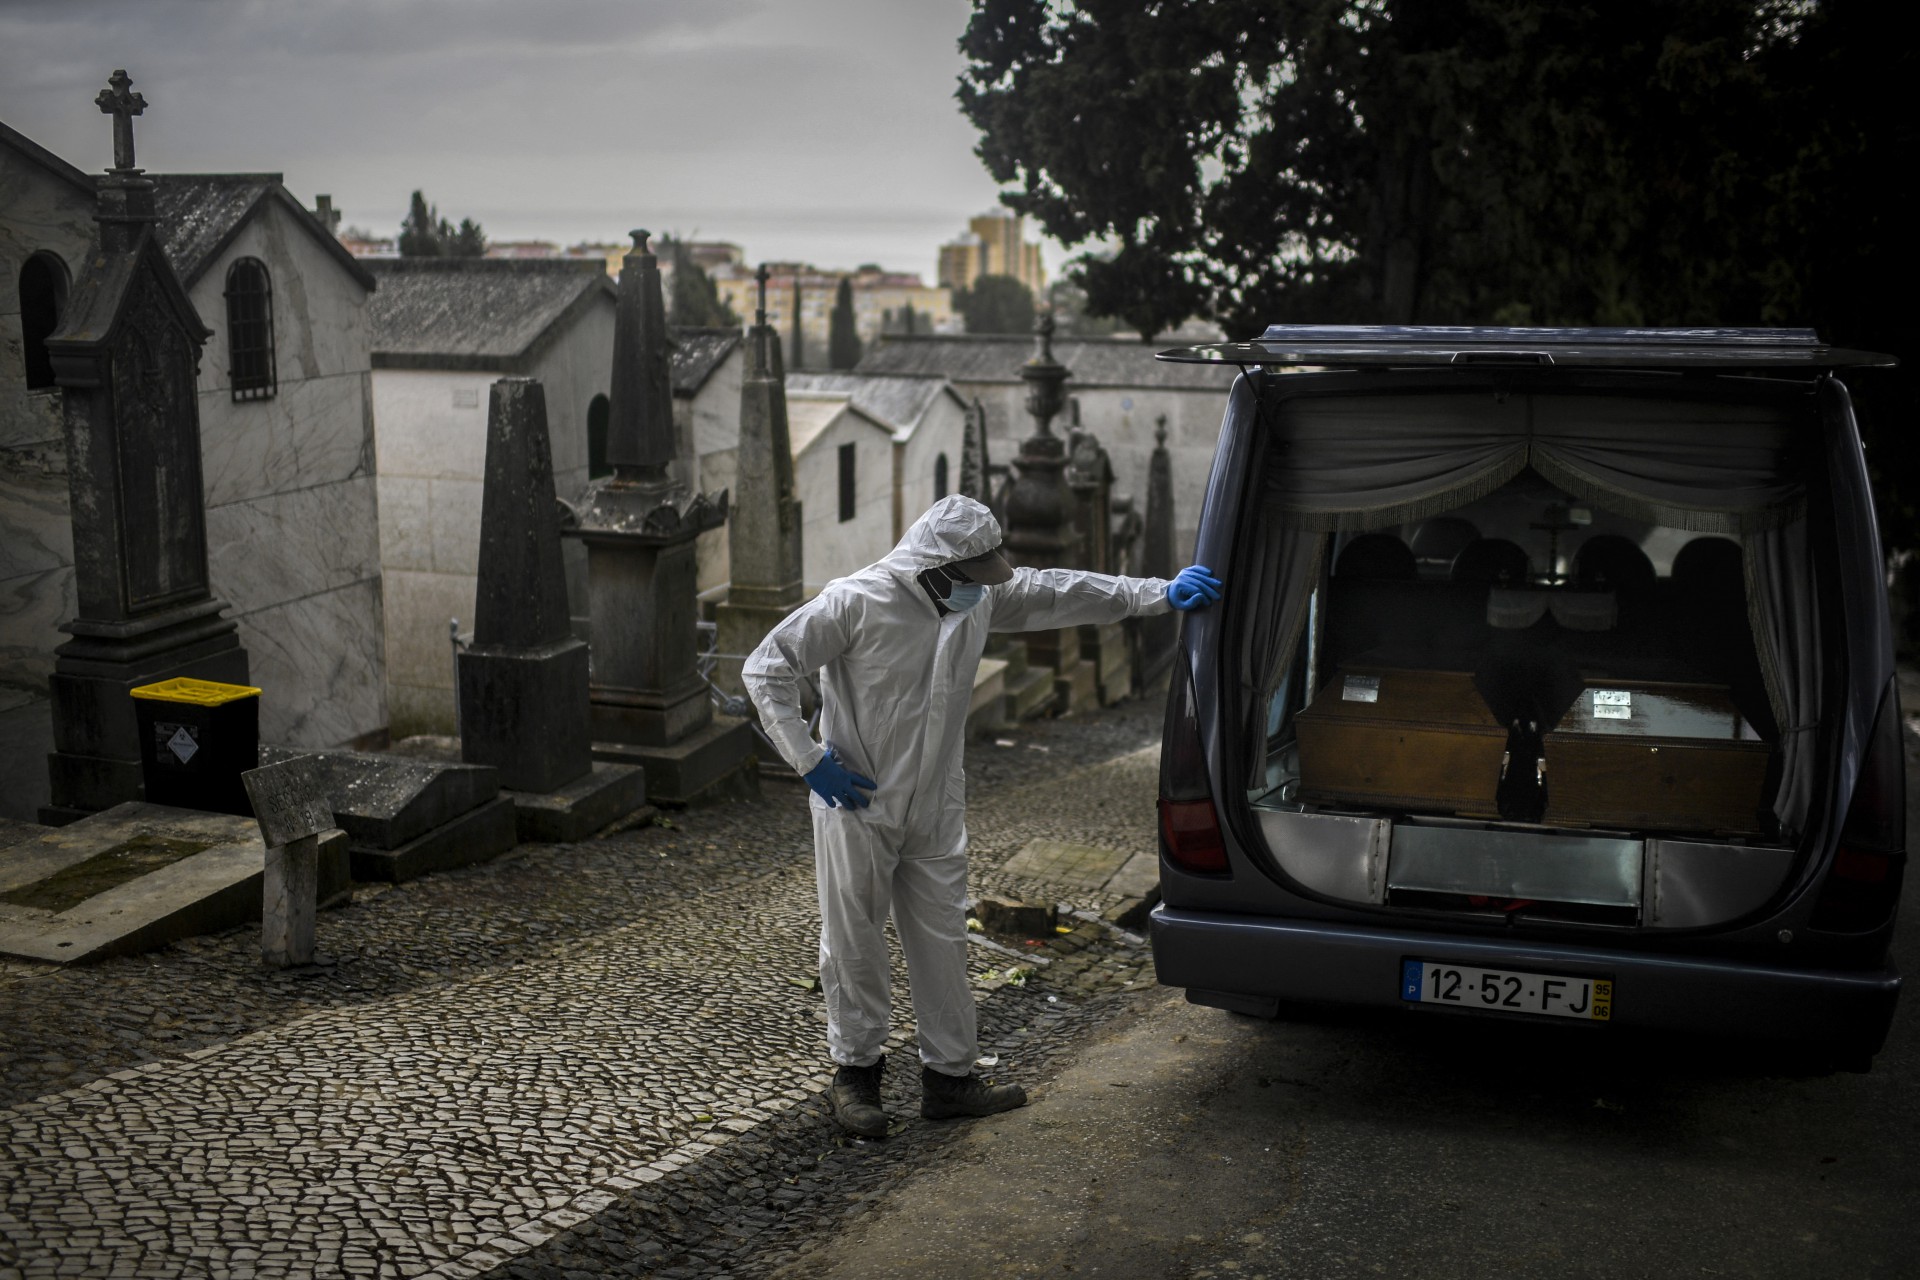 Com pouco mais de 1.5 mil mortes por milhão de habitantes desde o início da pandemia, Portugal está atrás da Itália, mas à frente dos EUA e da Espanha em número proporcional de mortos - AFP